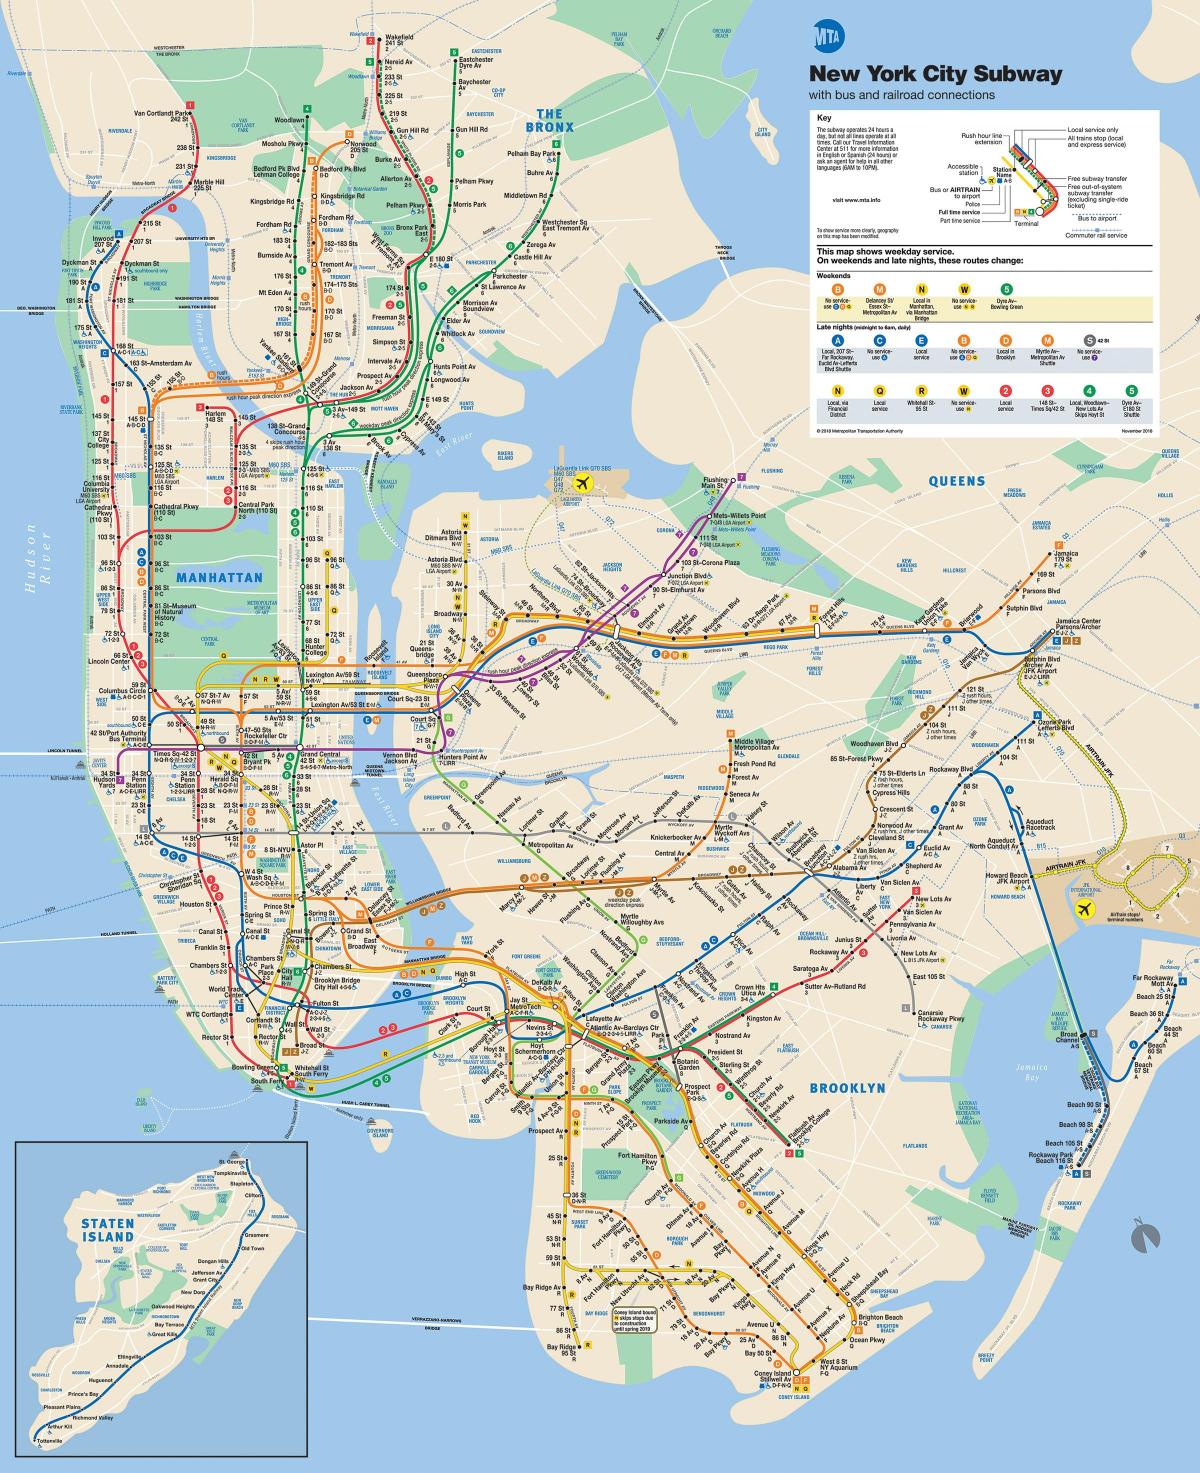 Manhattan street arată hartă, cu stații de metrou